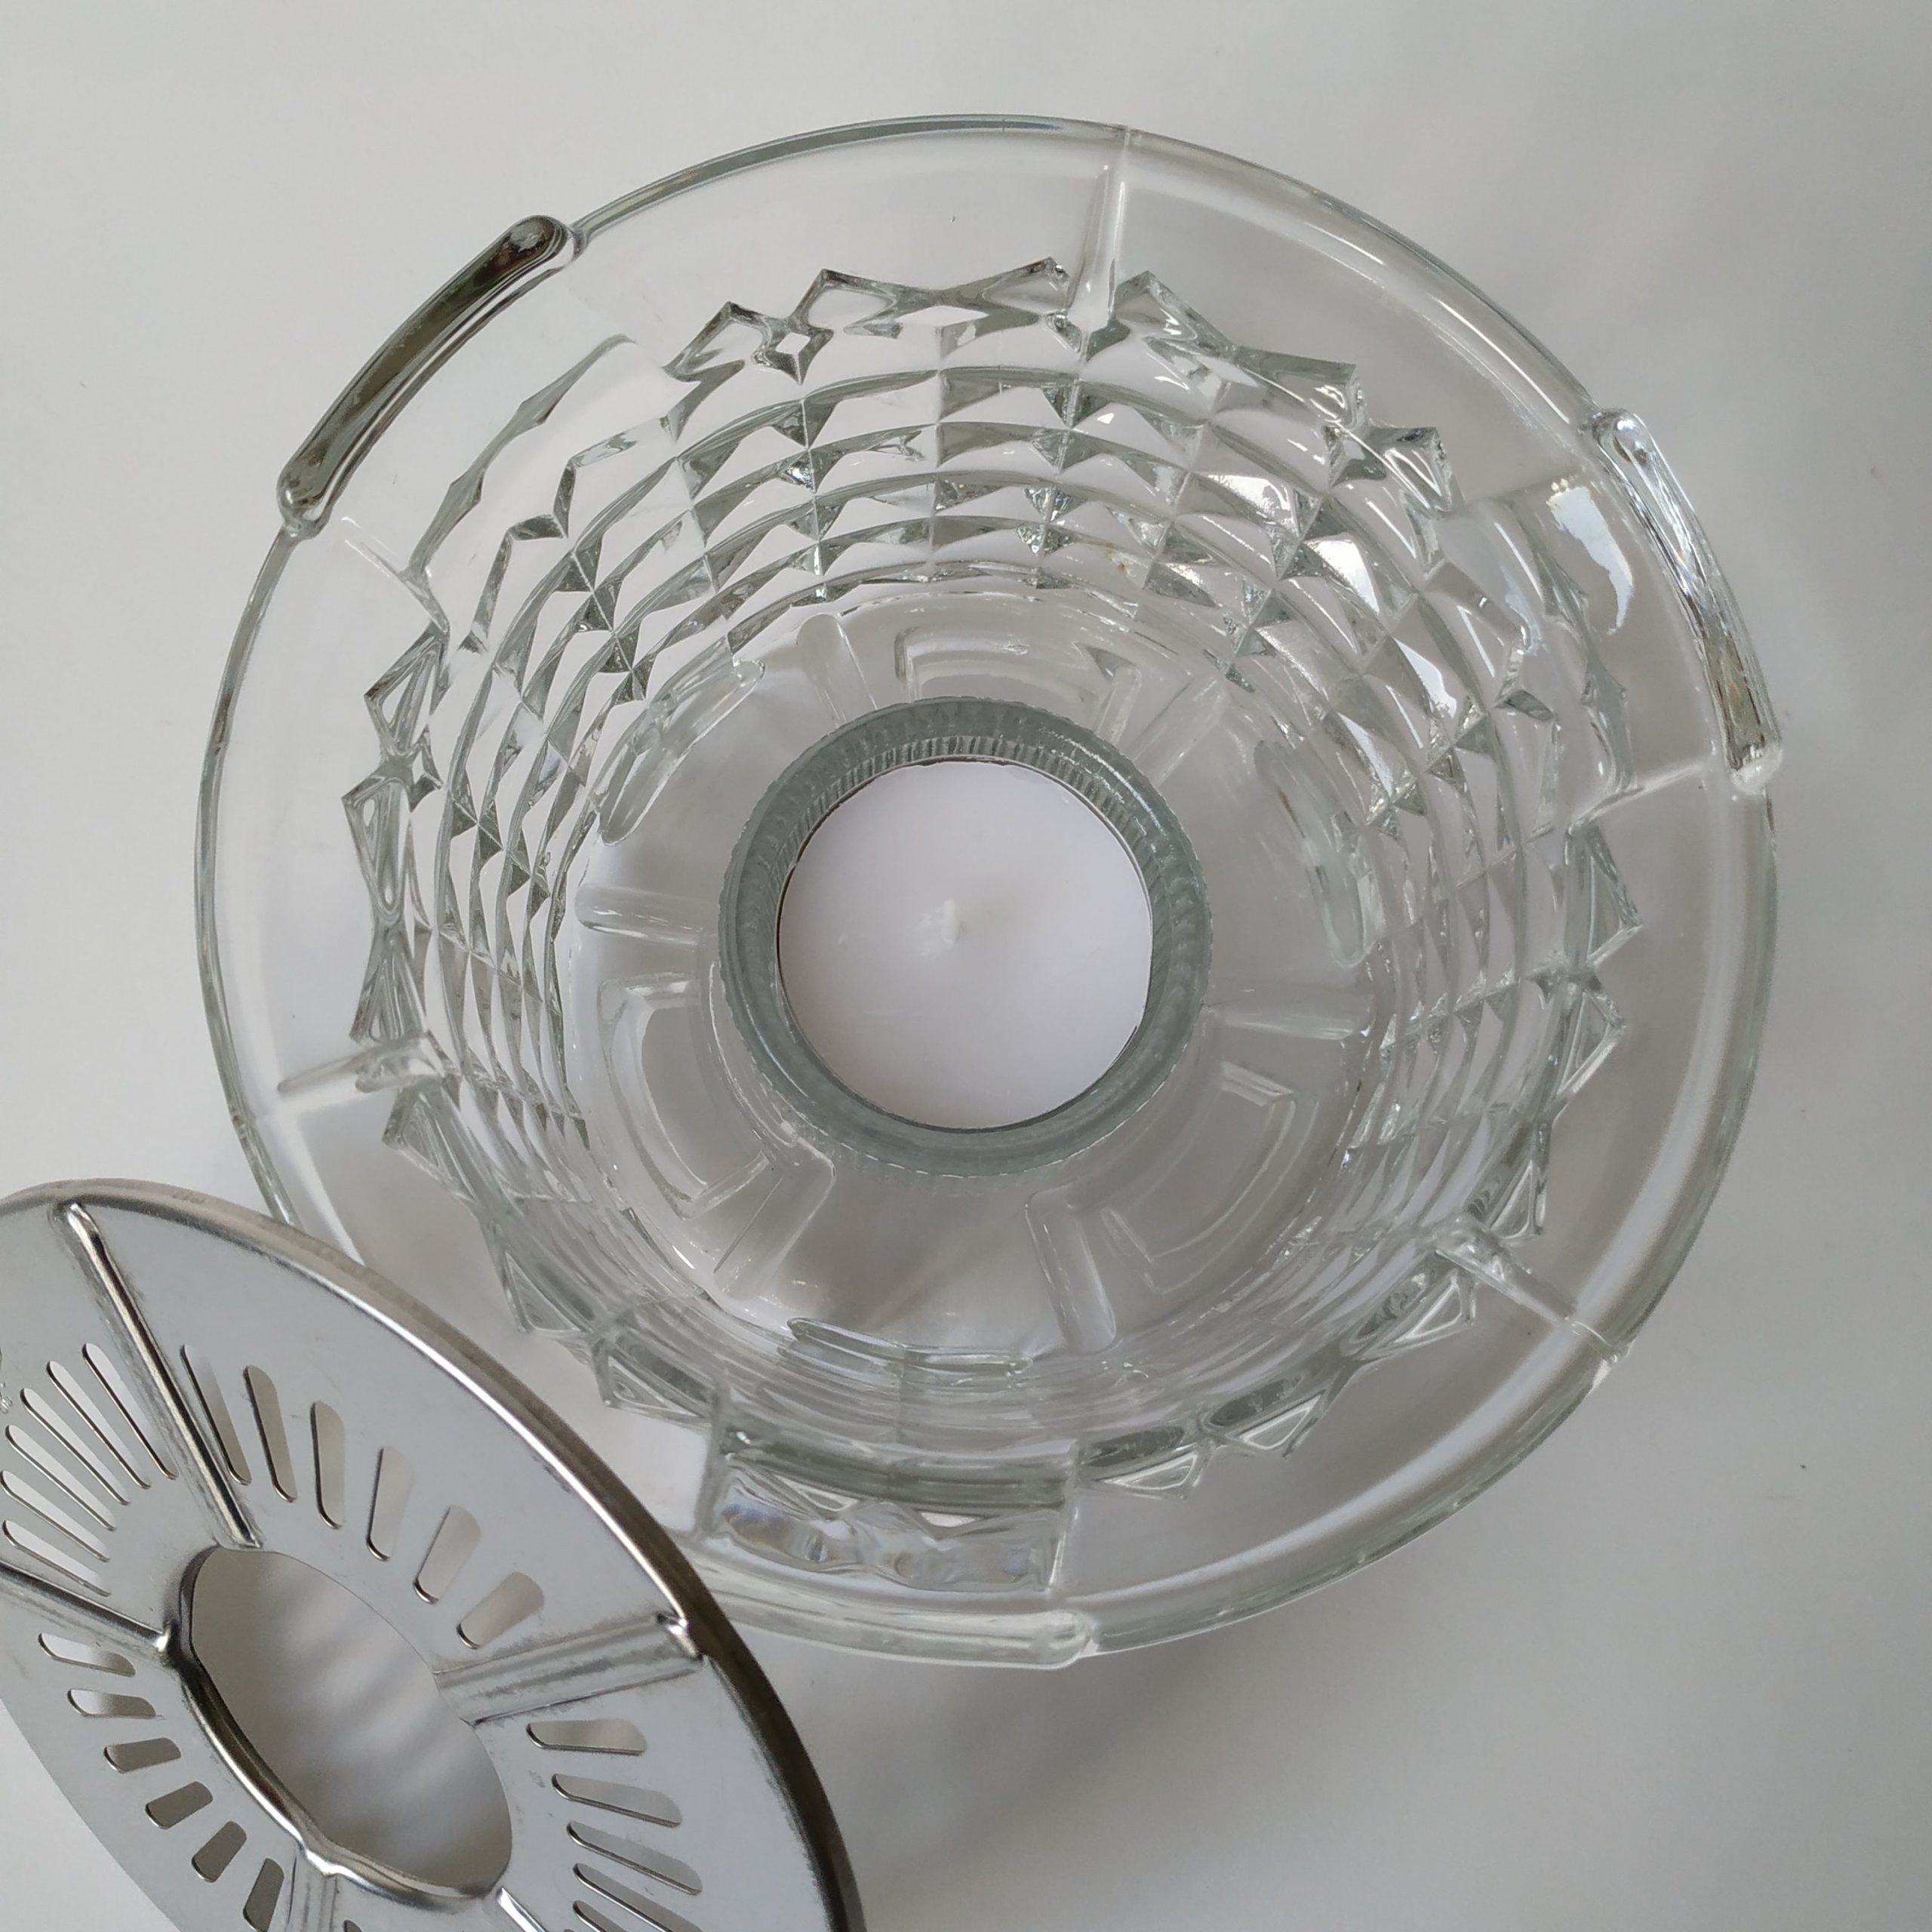 Theelichthouder van glas van Douwe Egberts met zilverkleurig rooster – diameter 14 cm – hoogte 8,5 cm (5)